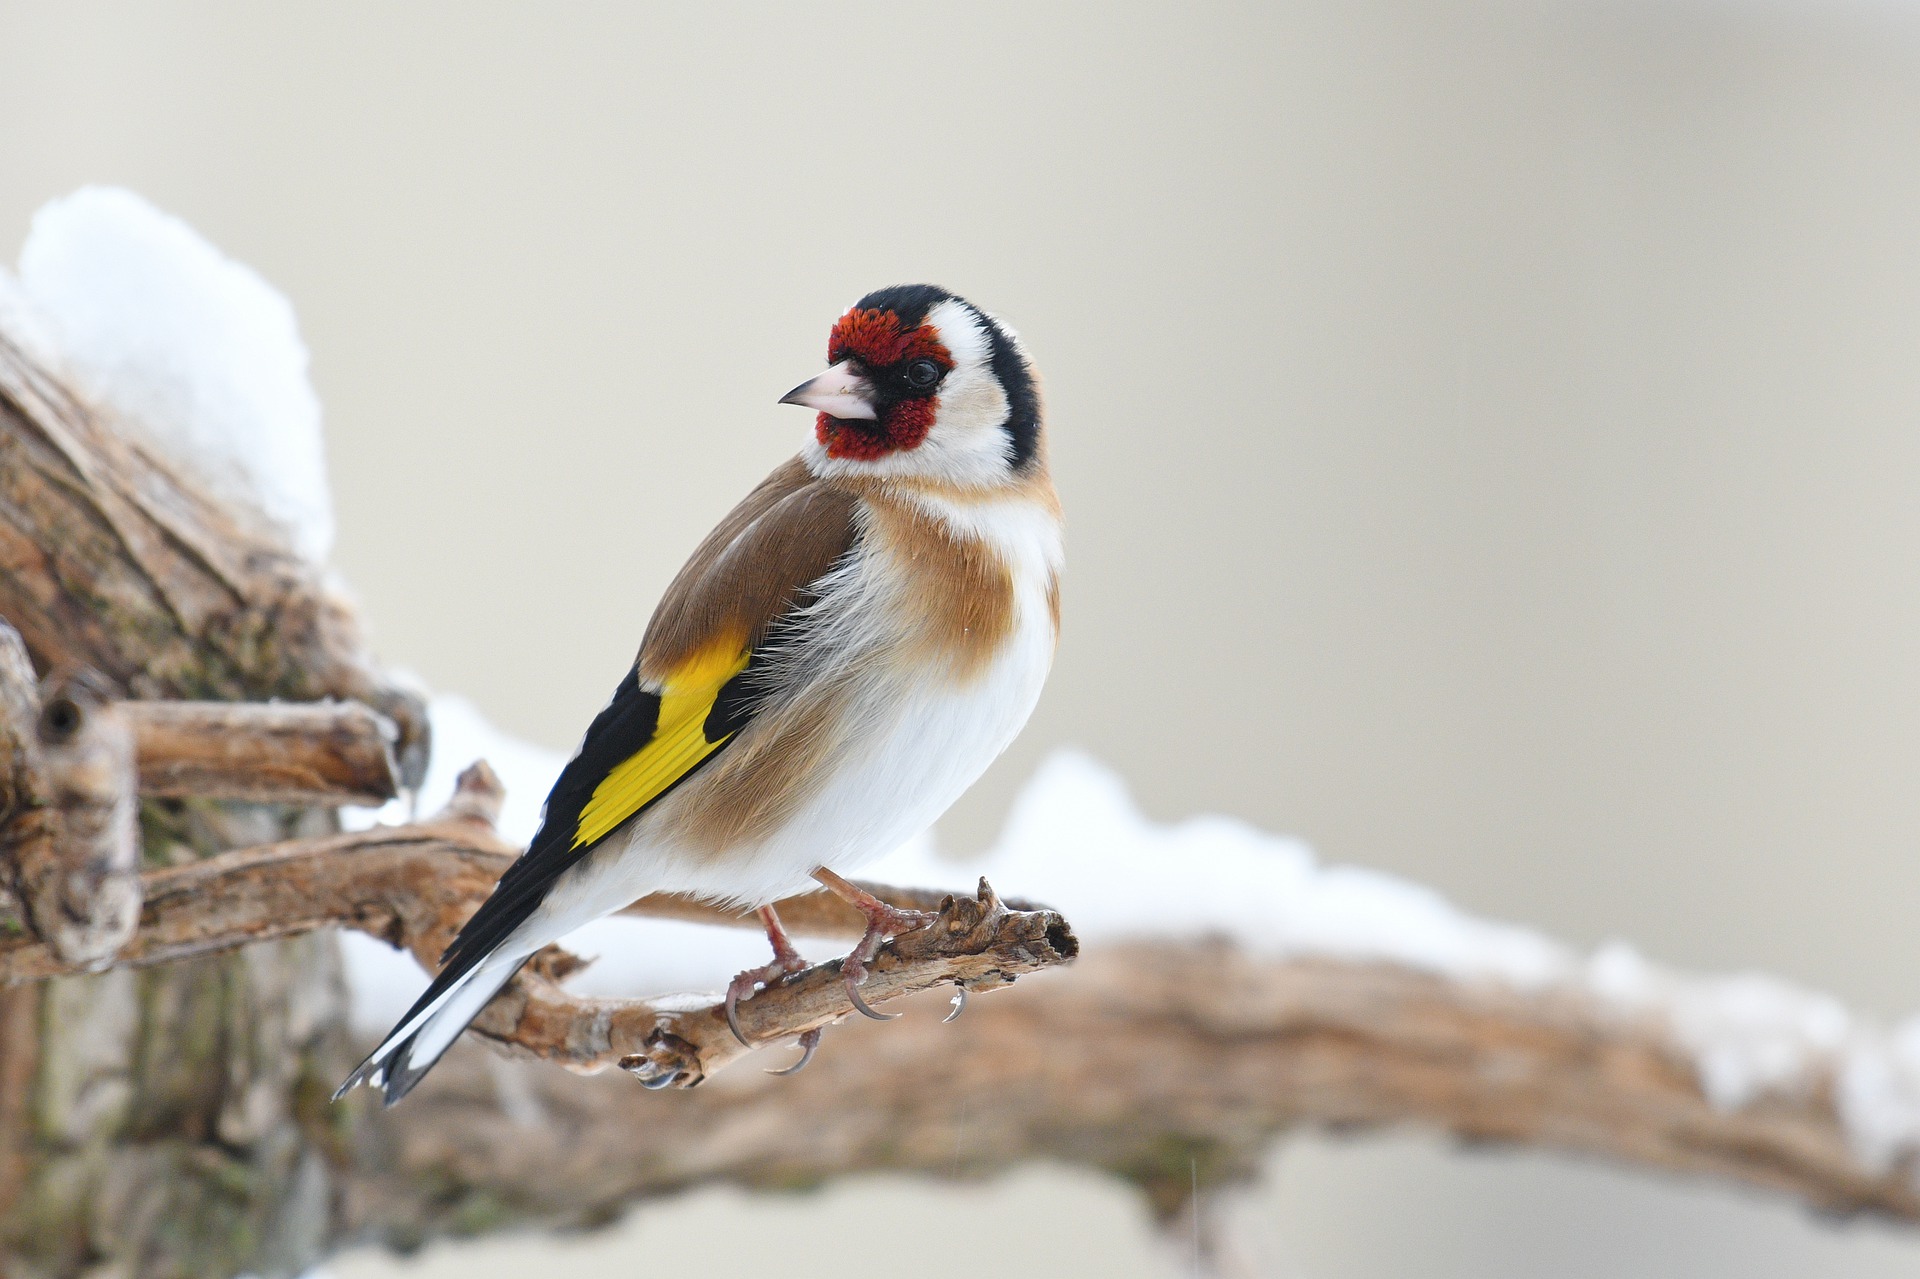 Nourrir les oiseaux l'hiver : bonne ou mauvaise idée?, Blogue